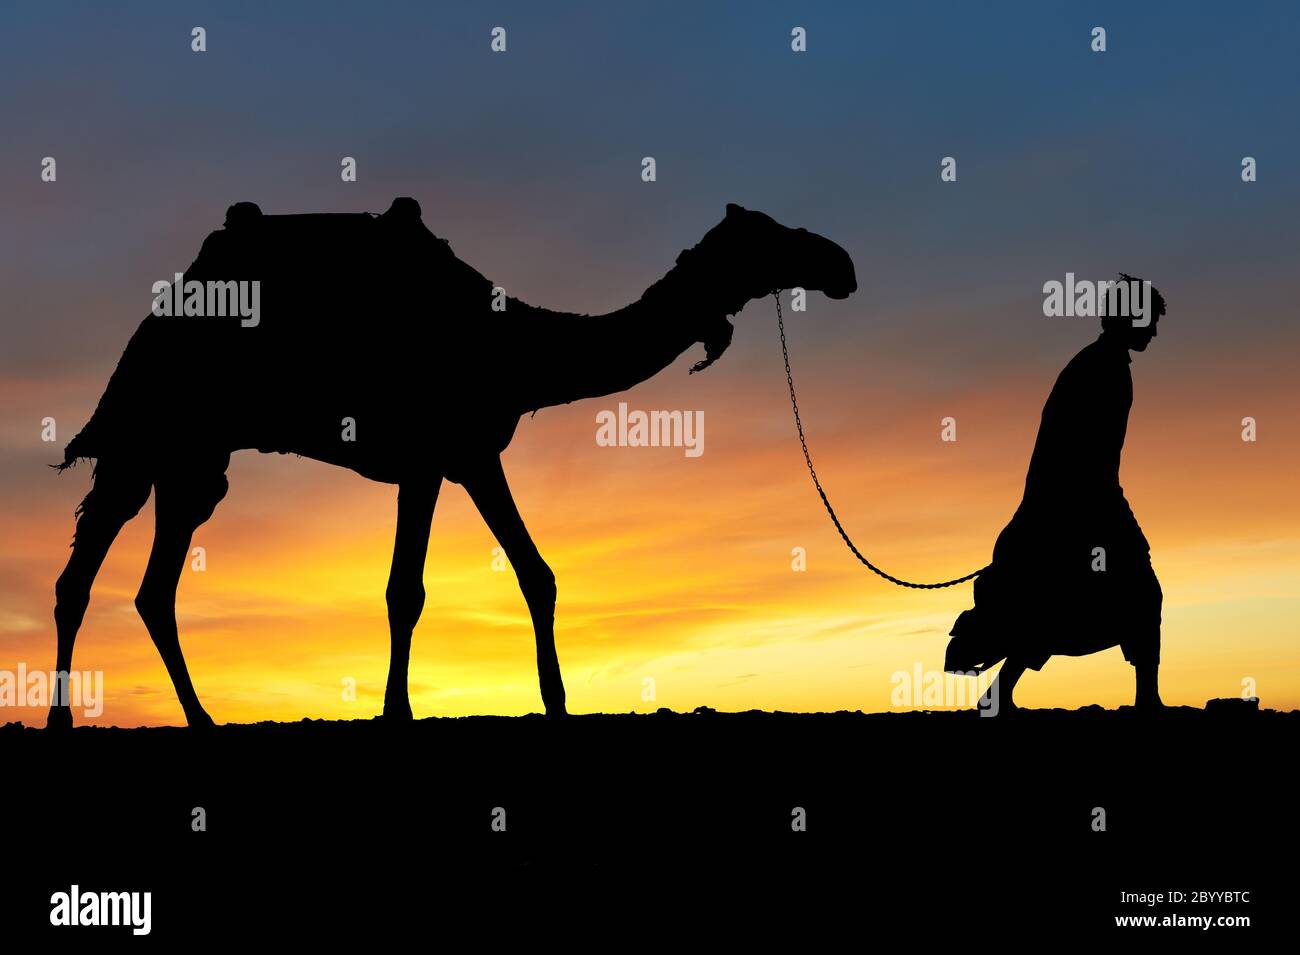 Silueta de árabe con camello al amanecer Foto de stock